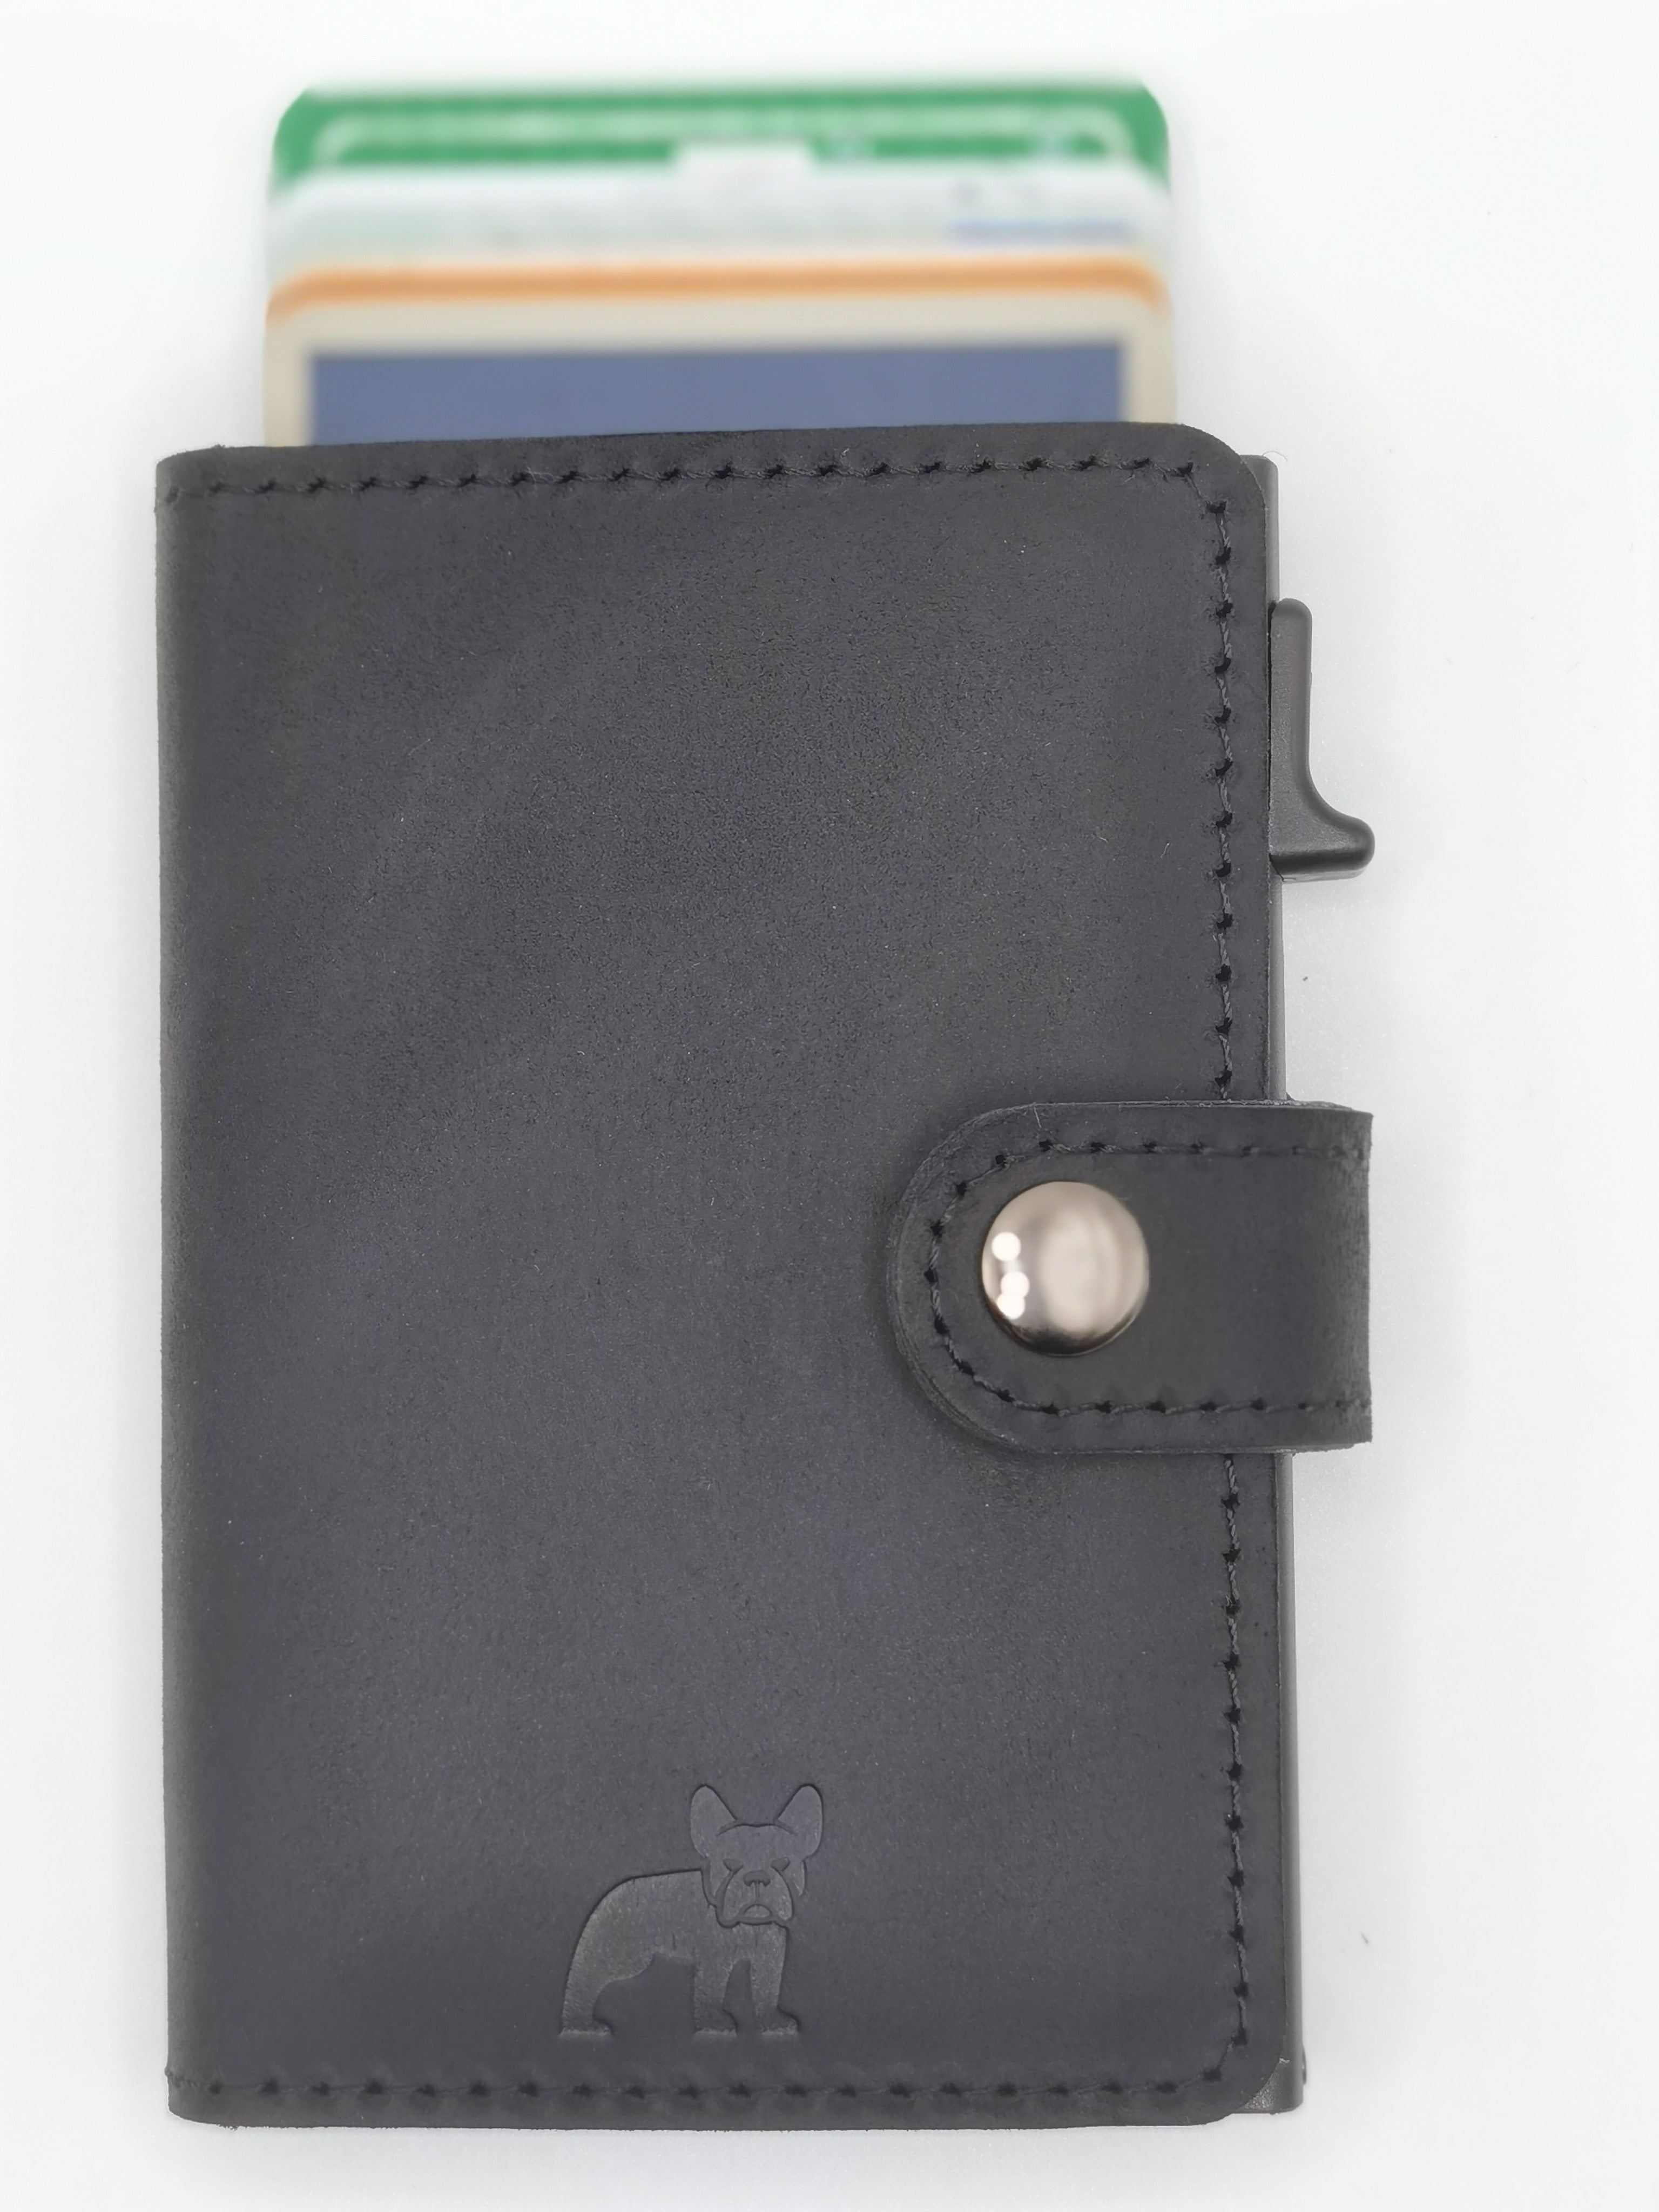 FRITZWERK Slim DOG Premium Echtleder in Schwarz mit schwarzem Card Holder Portmonee Clip EC Karten Business